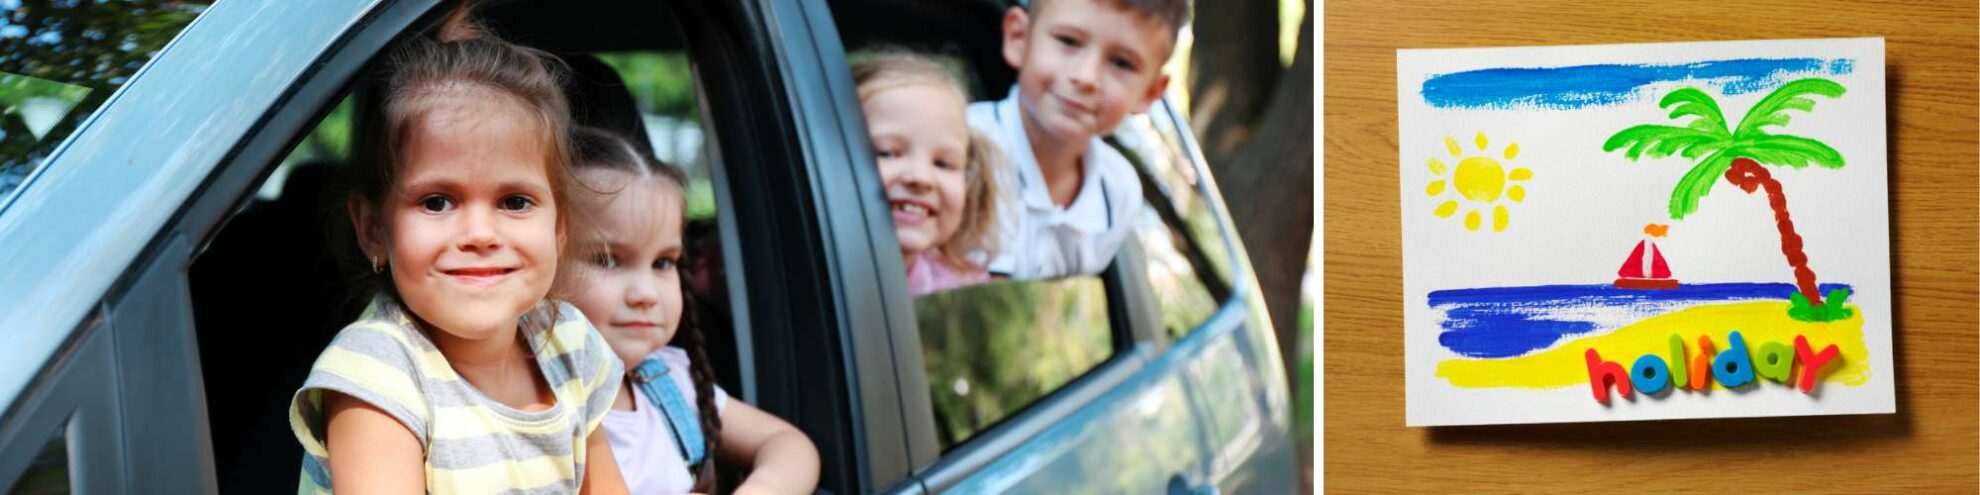 Kinder in einem Auto und ein gemaltes Bild, von einem Kind, das einen Urlaub darstellt